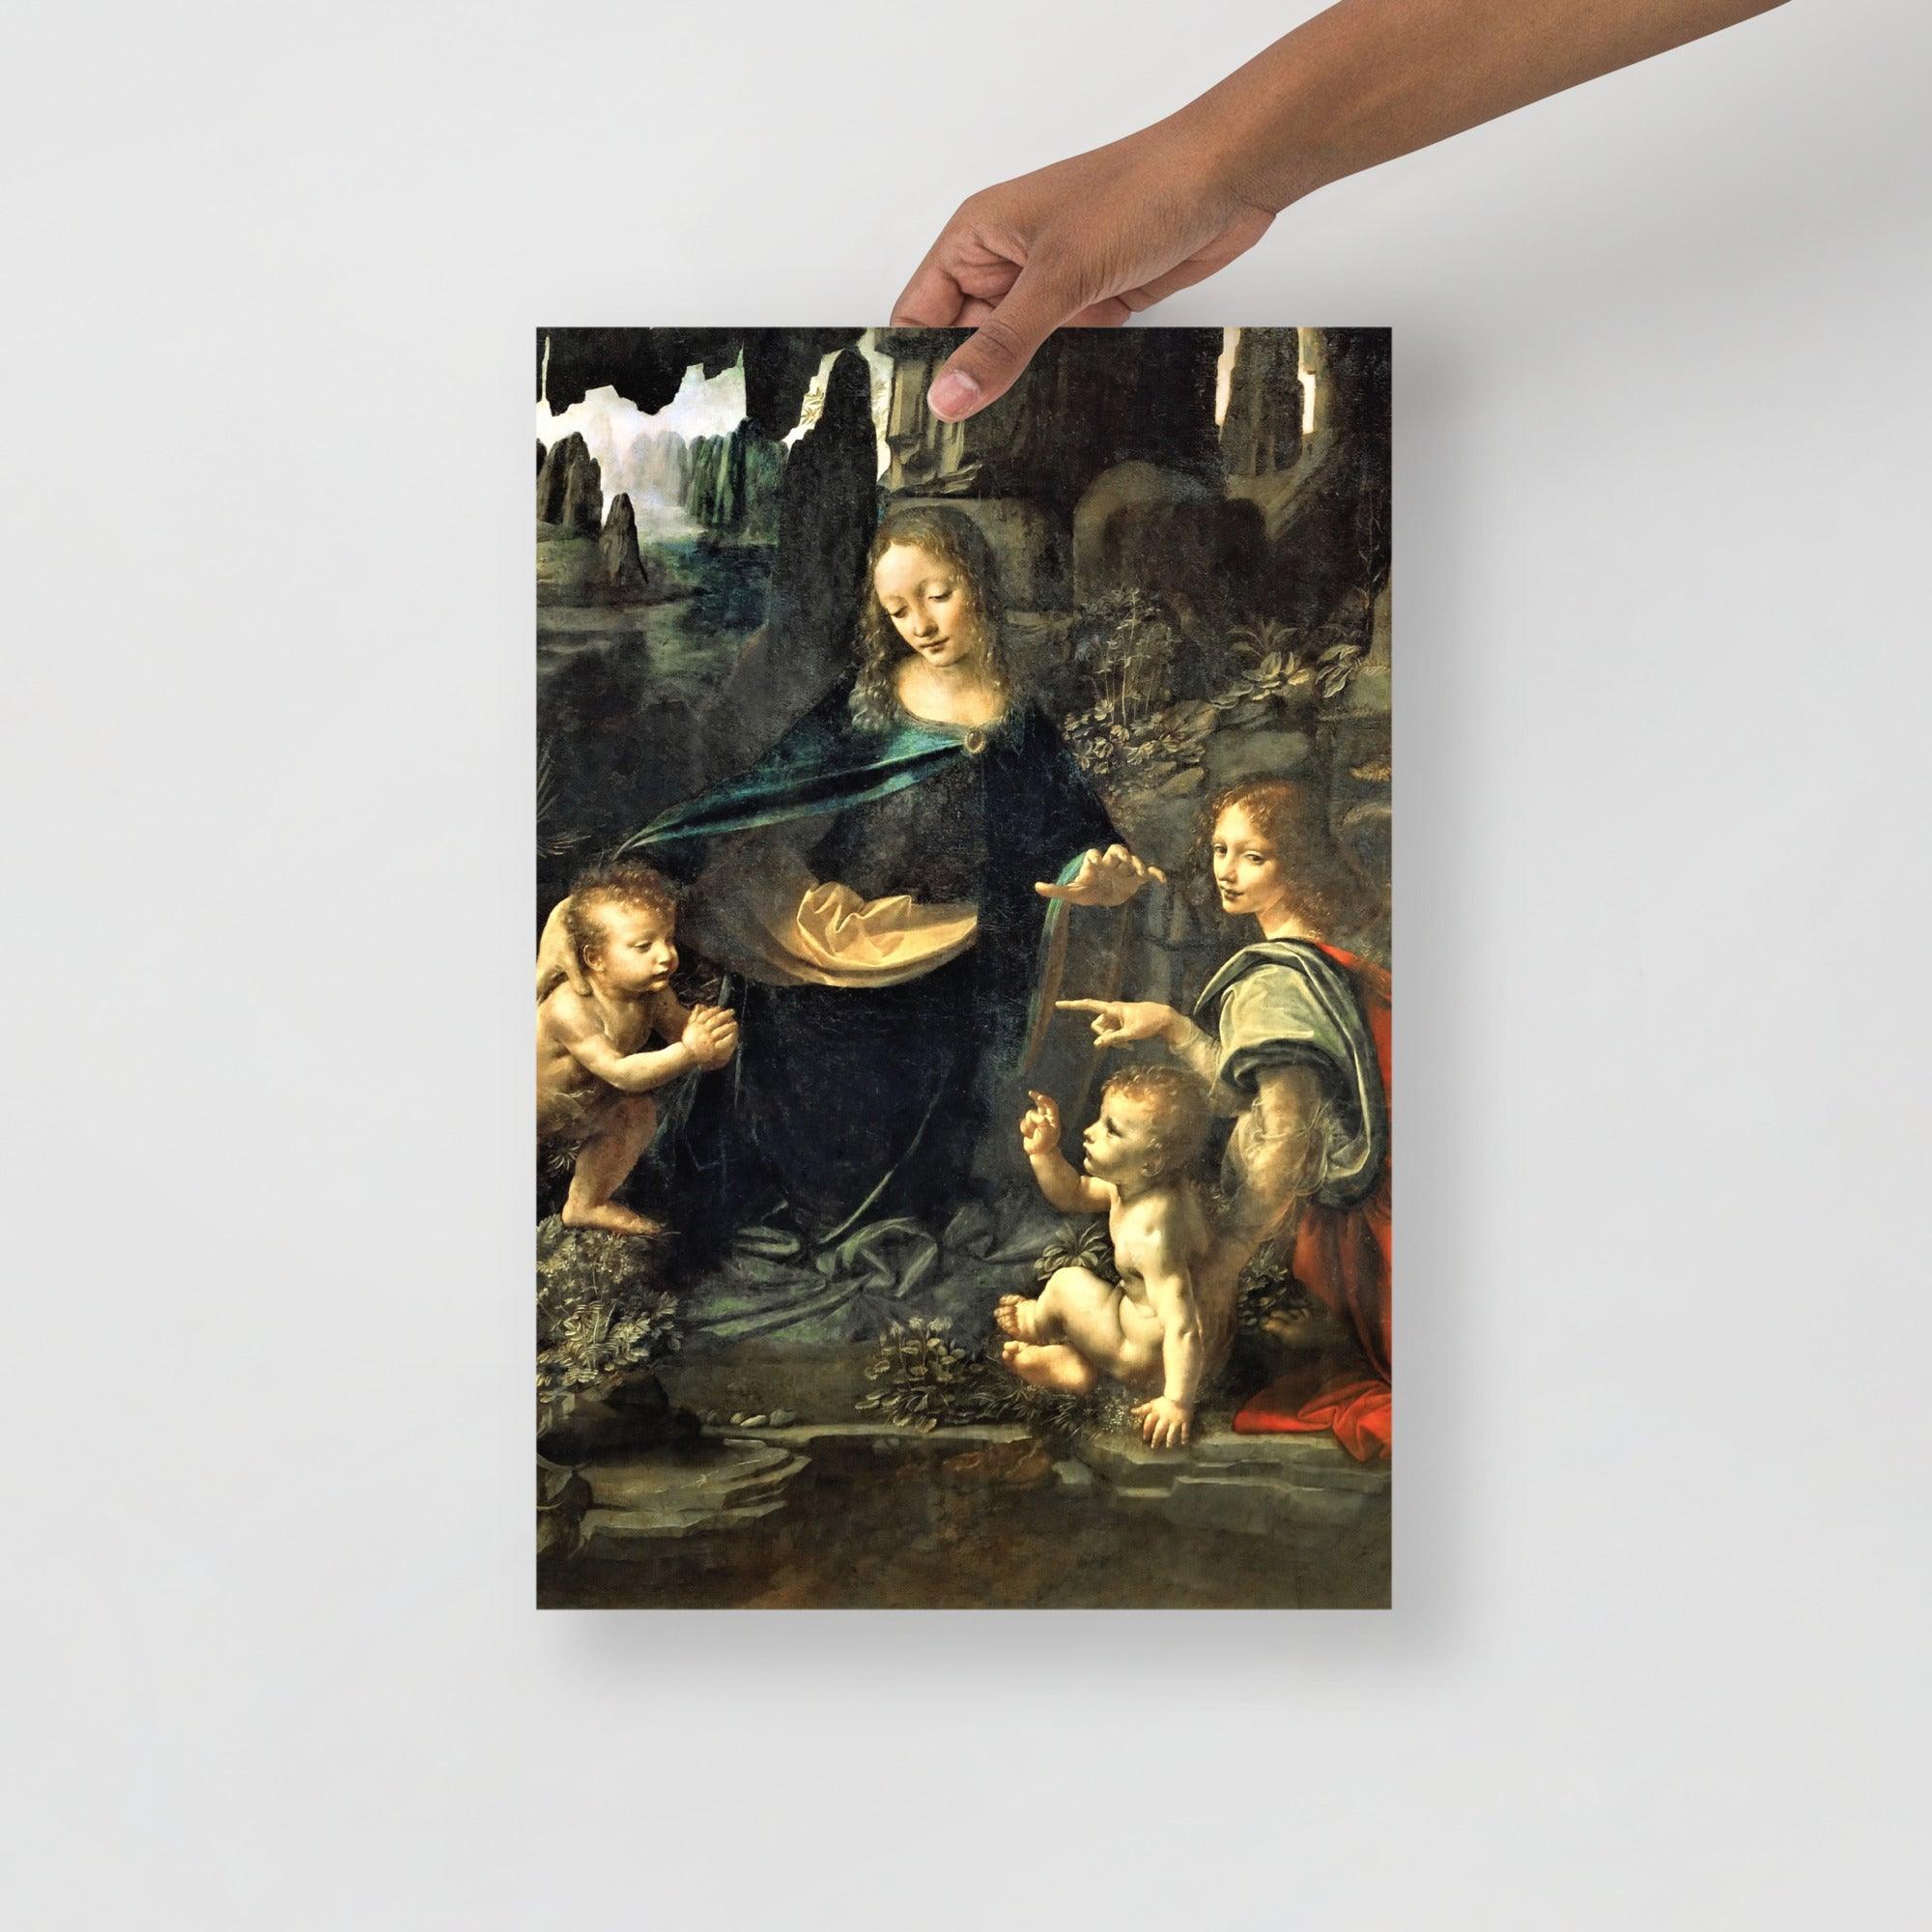 A Virgin of the Rocks by Leonardo Da Vinci  poster on a plain backdrop in size 12x18”.